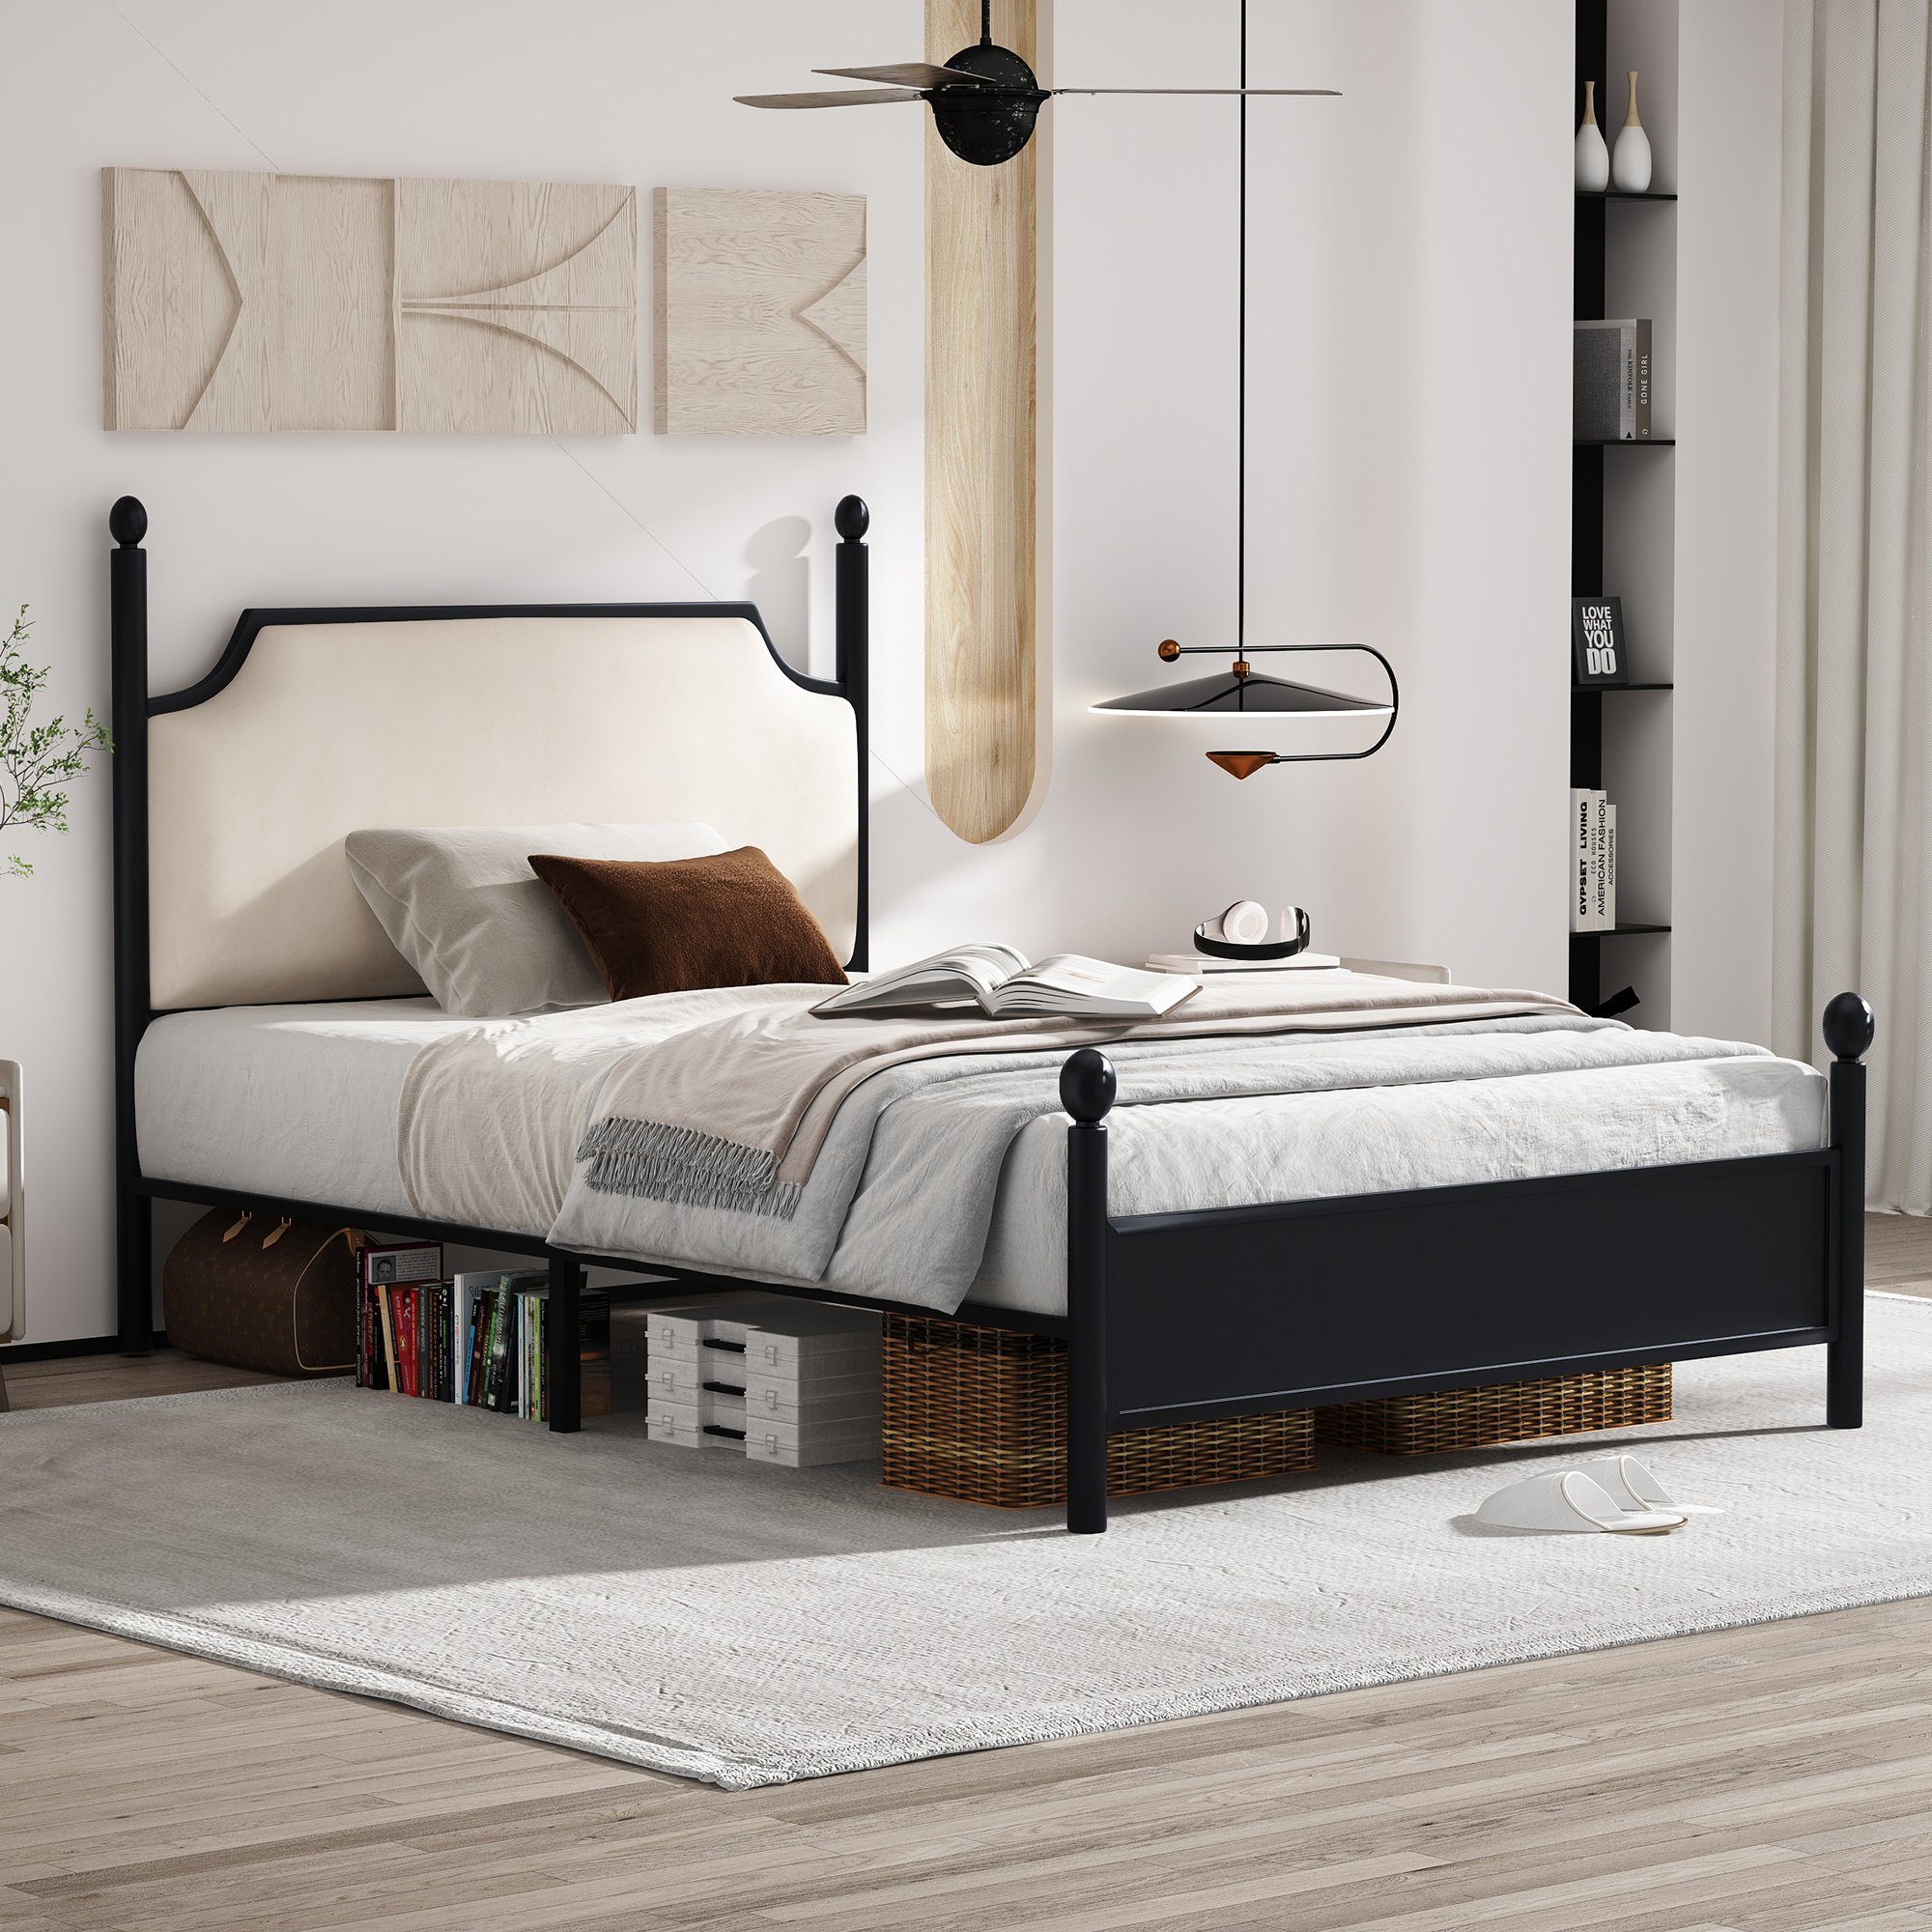 Flieks Metallbett, Einzelbett Kinderbett mit Lattenrost 90x200cm schwarz